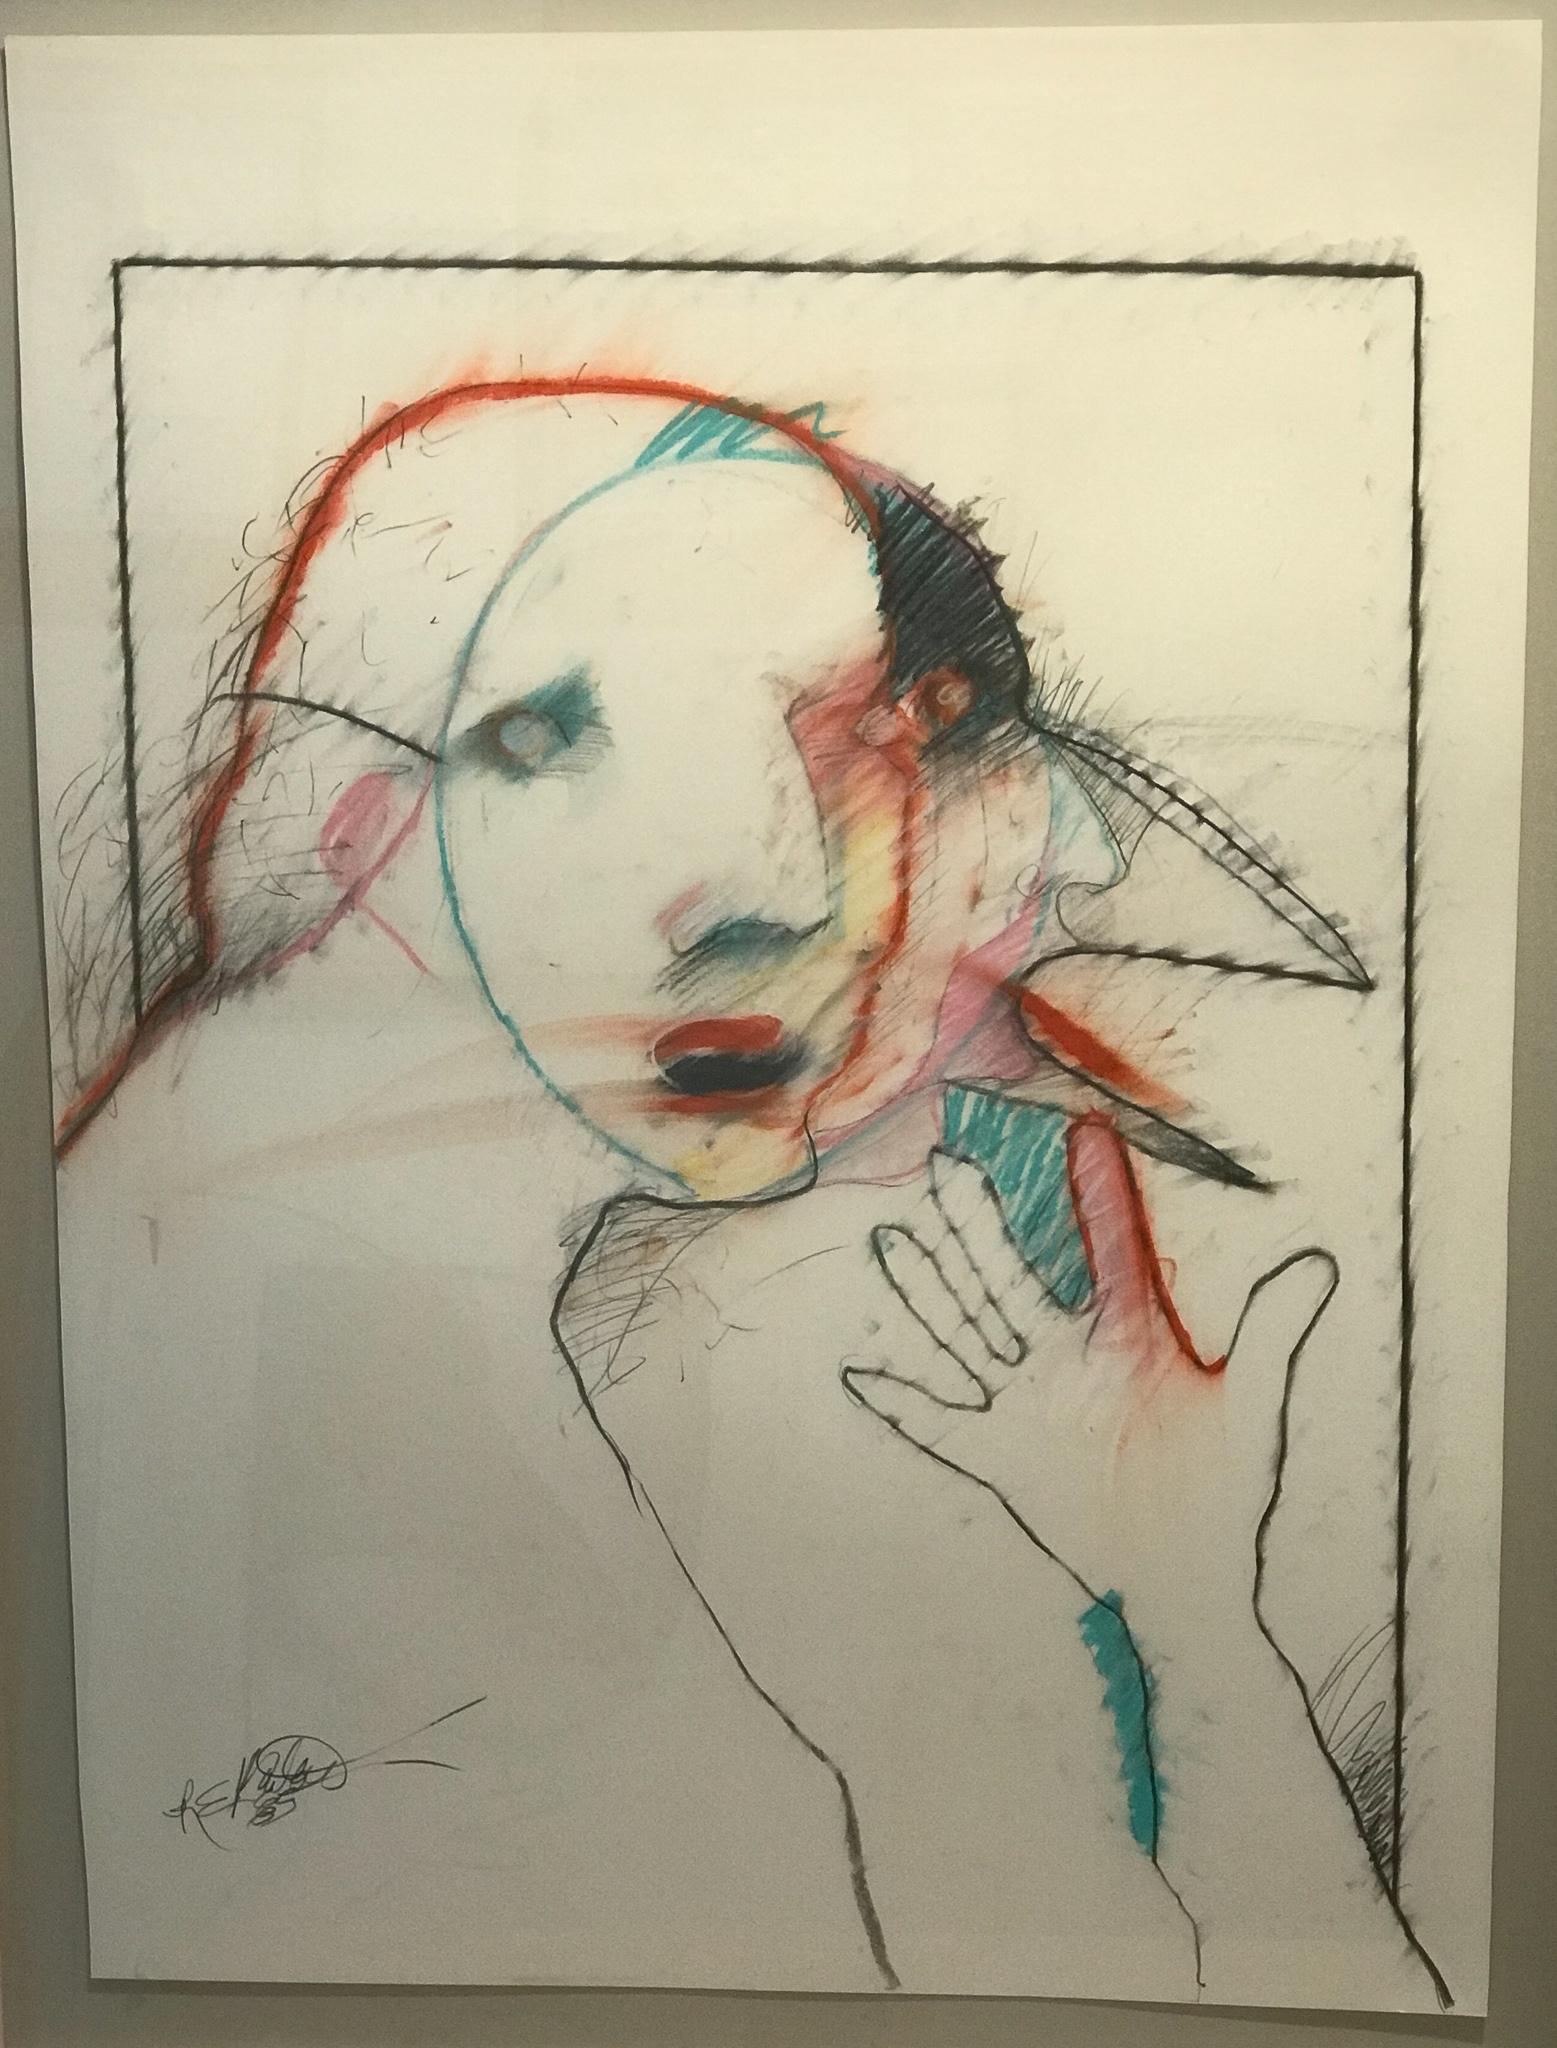 Vogelmann von Rick Bartow, Pastell auf Papier, abstrakt, weiß, rot, rosa, blau, schwarz